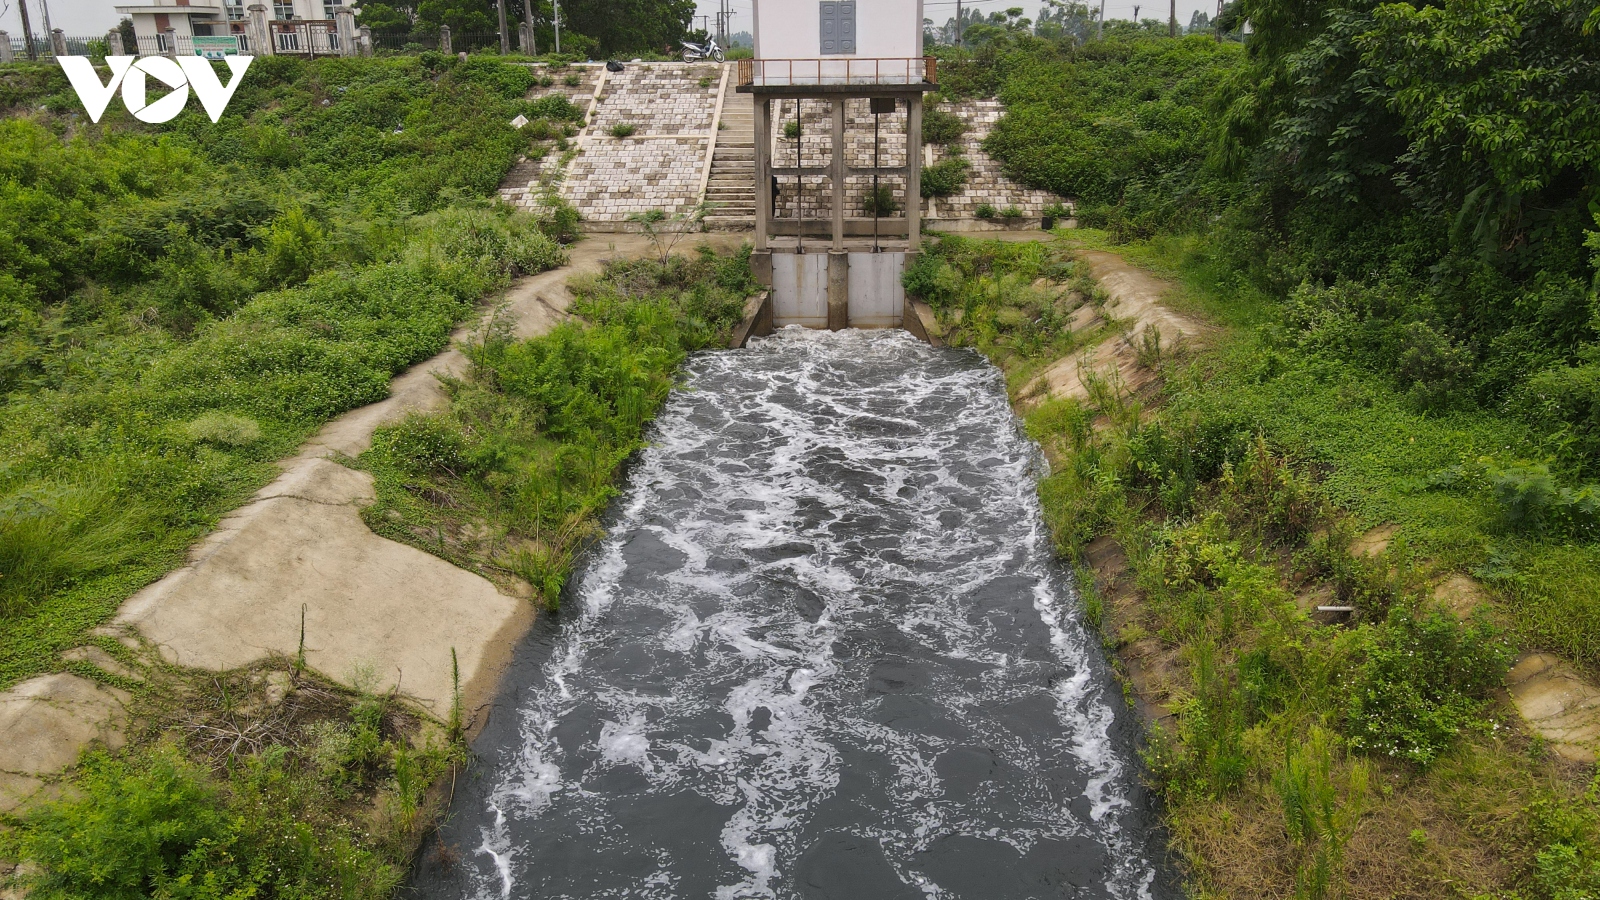 Nước sông Cầu ở Bắc Ninh, Bắc Giang lại bị “nhuộm đen”, người dân bức xúc